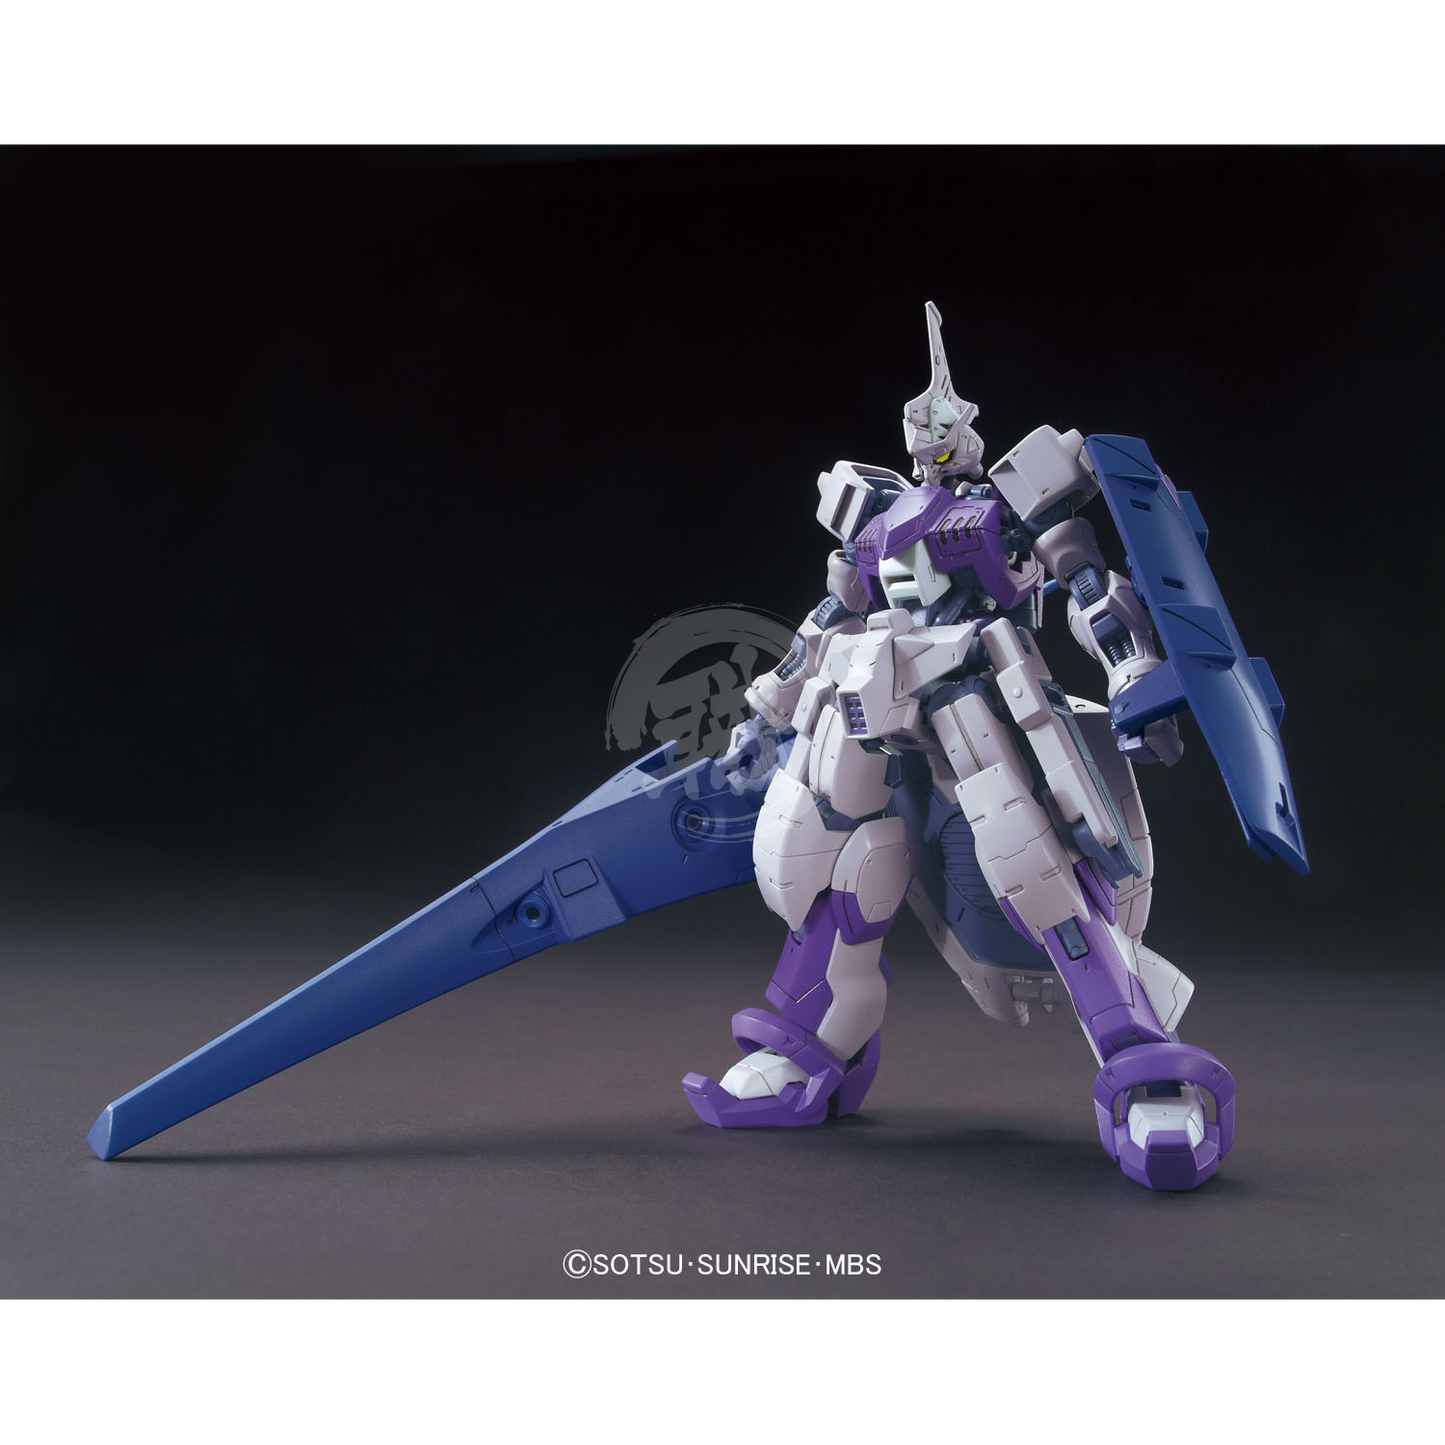 HG Gundam Kimaris Trooper - ShokuninGunpla